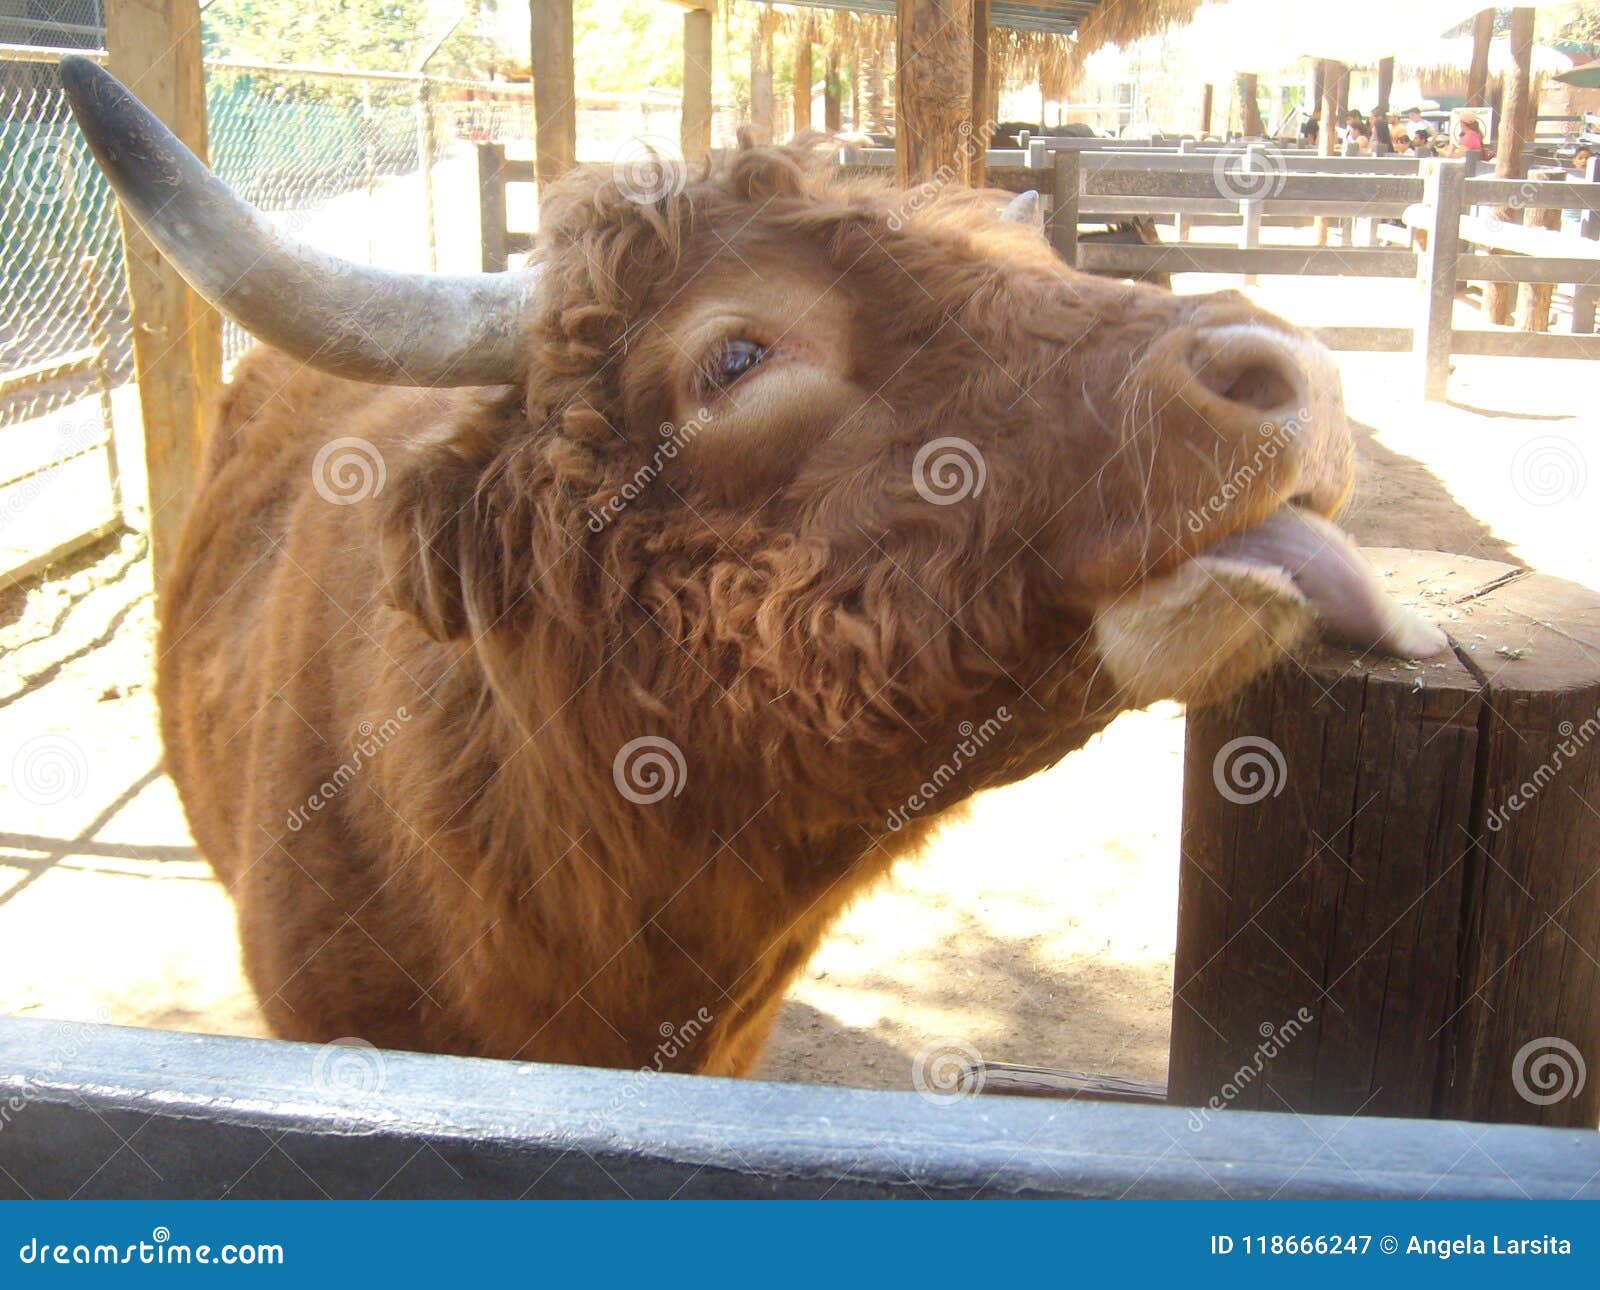 yak in mexicali beautiful animal